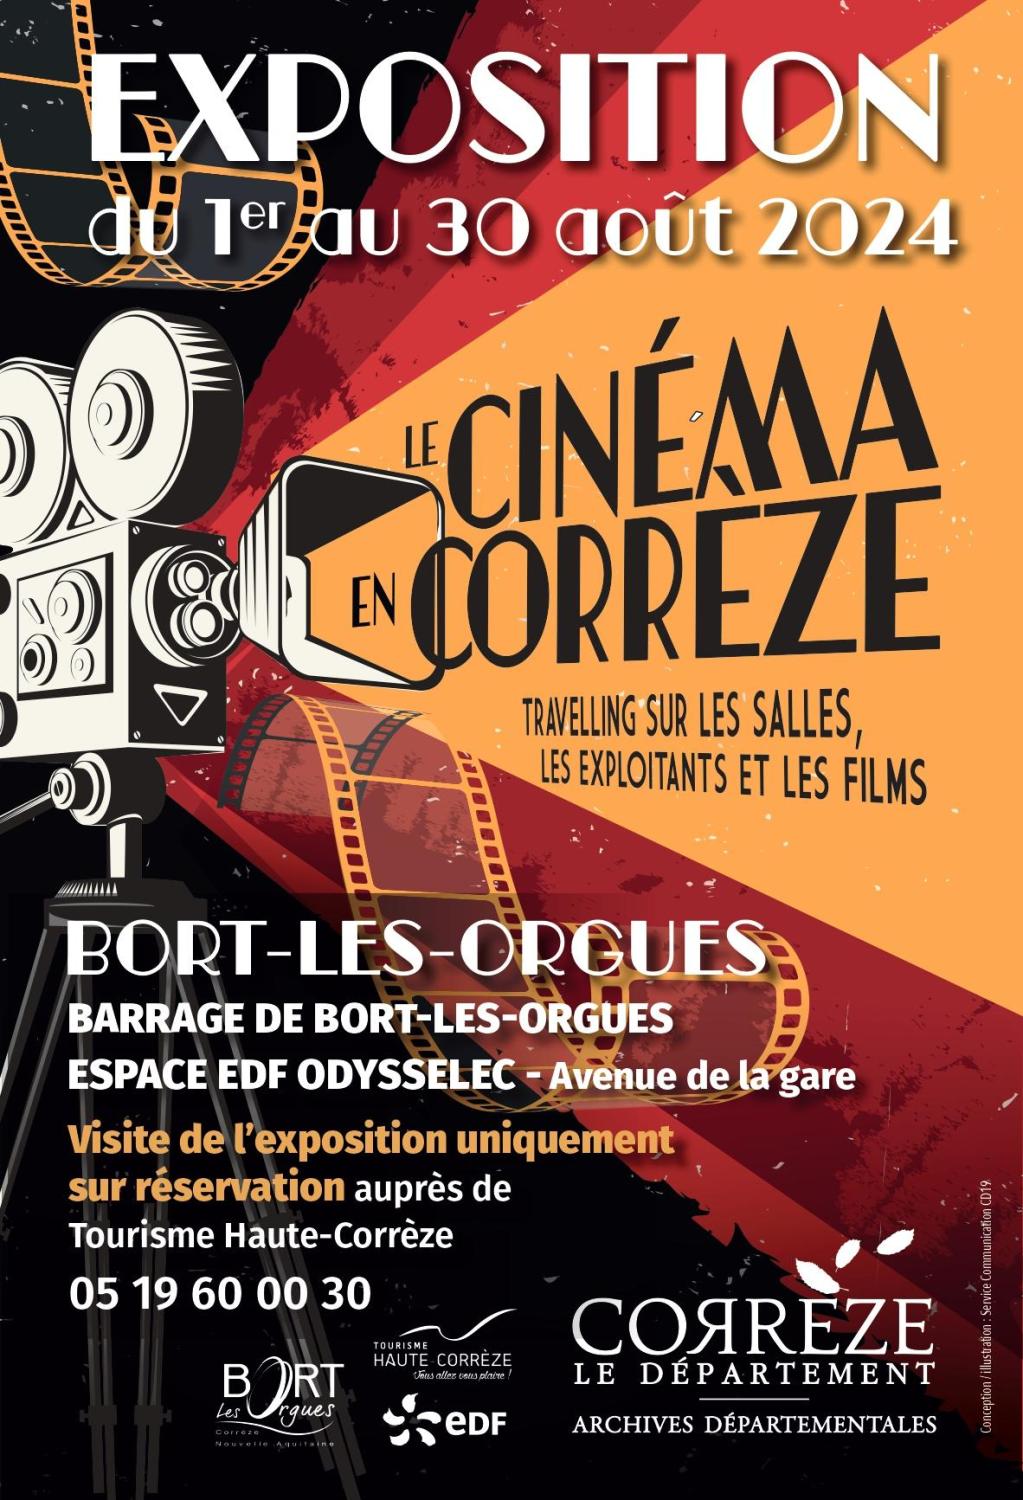 Expo cinema en corrèze barrage BORT LES ORGUES